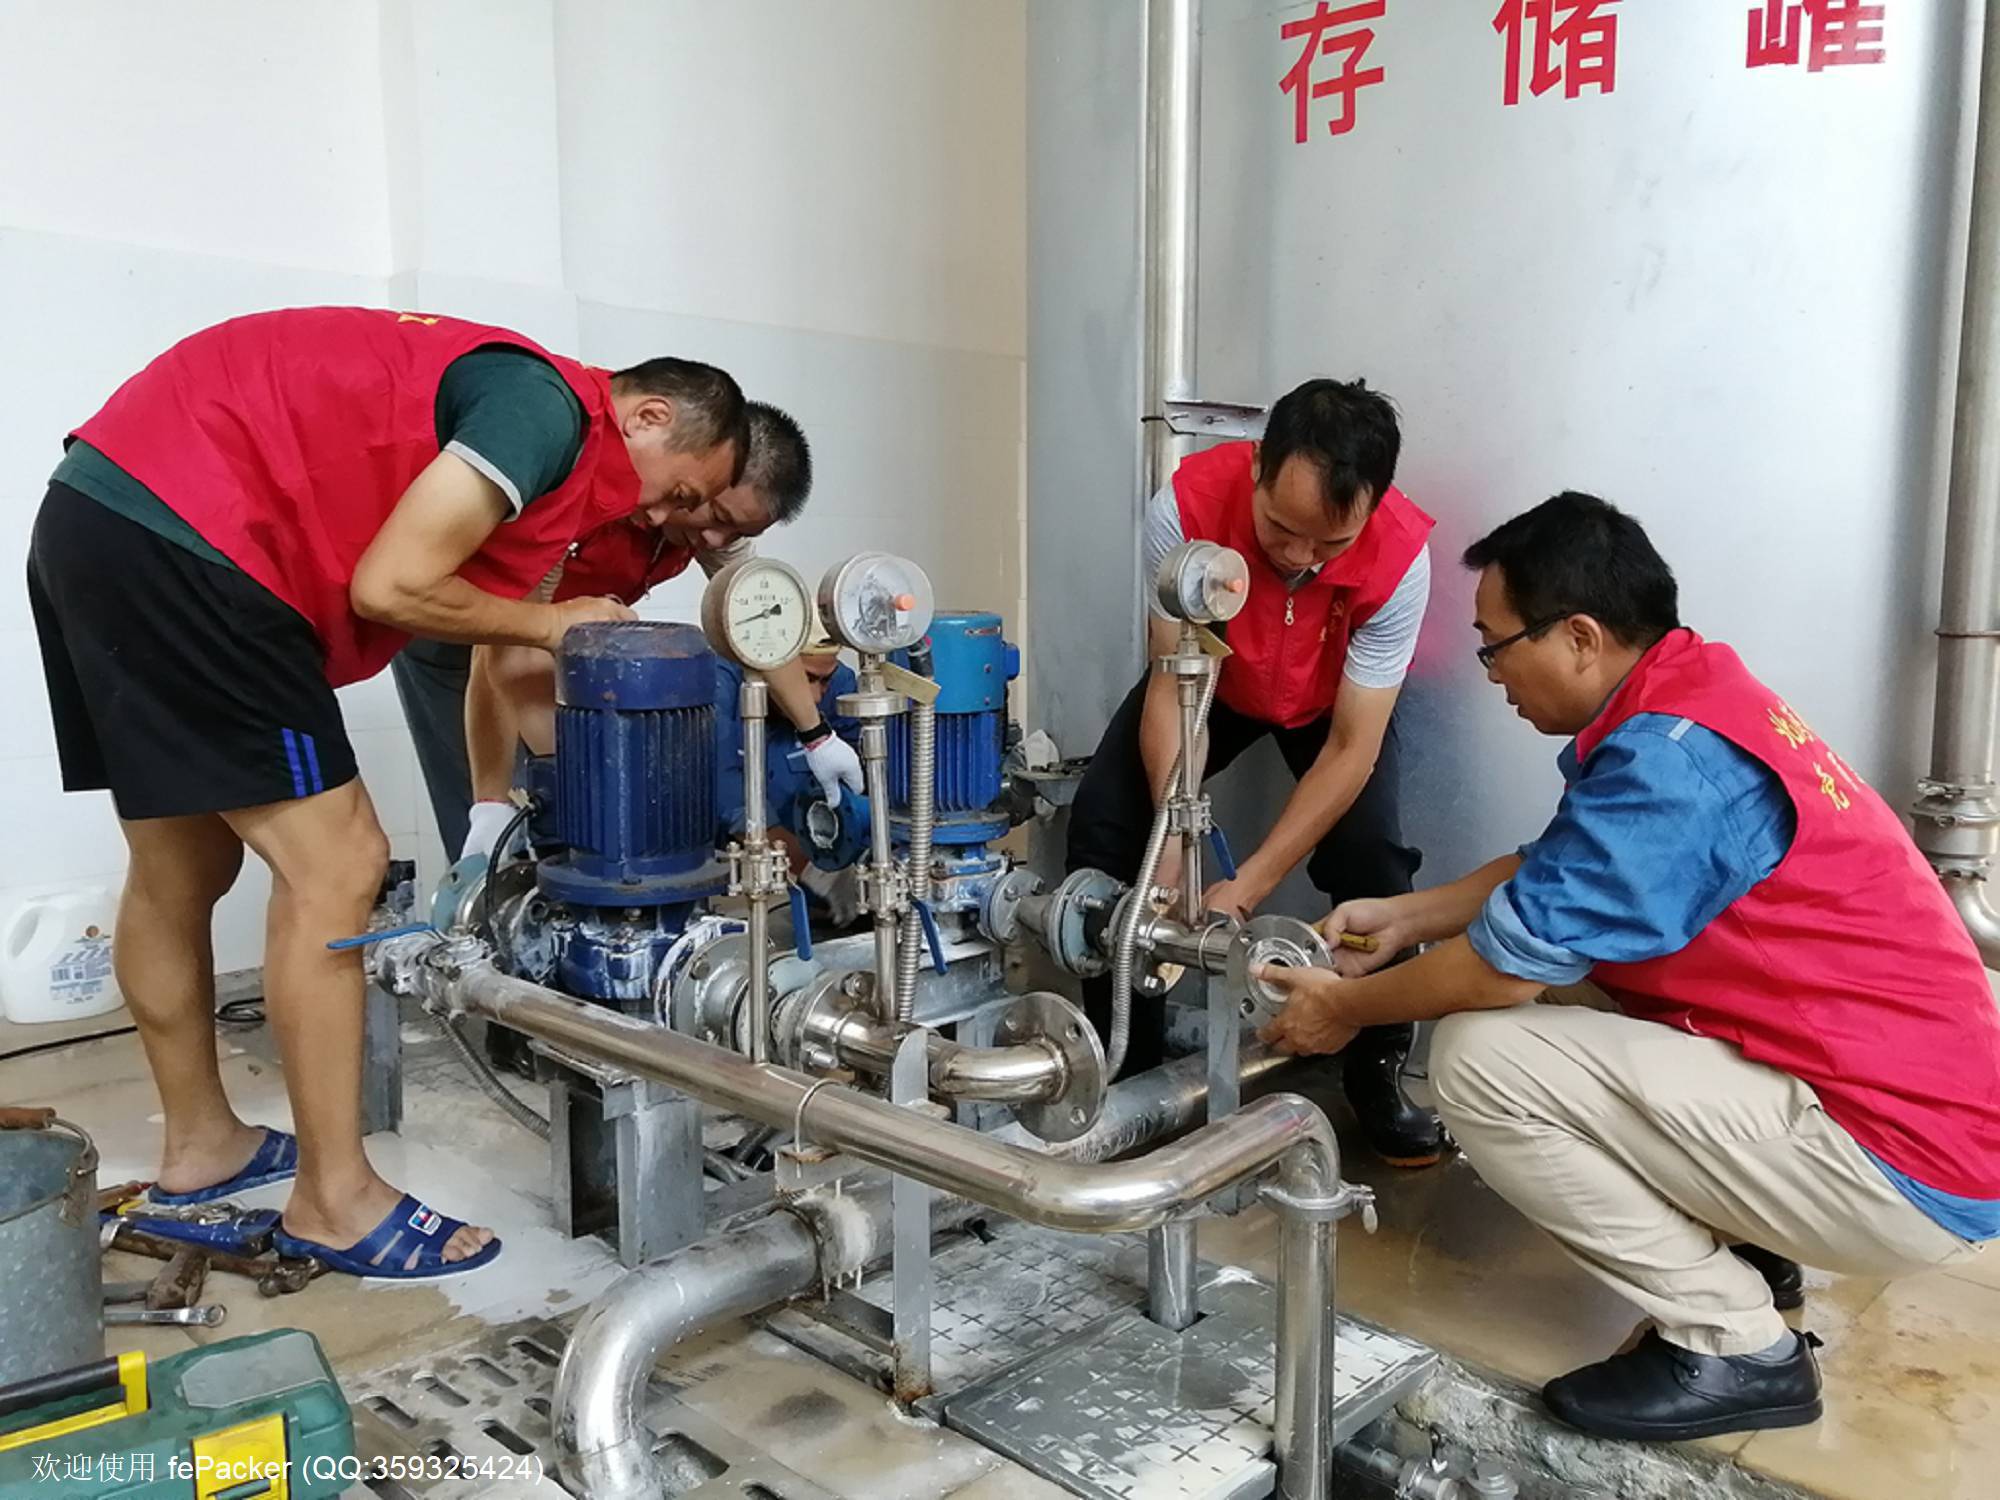 3、供水公司禾塘水厂党支部党员进行供水设备的维护.jpg